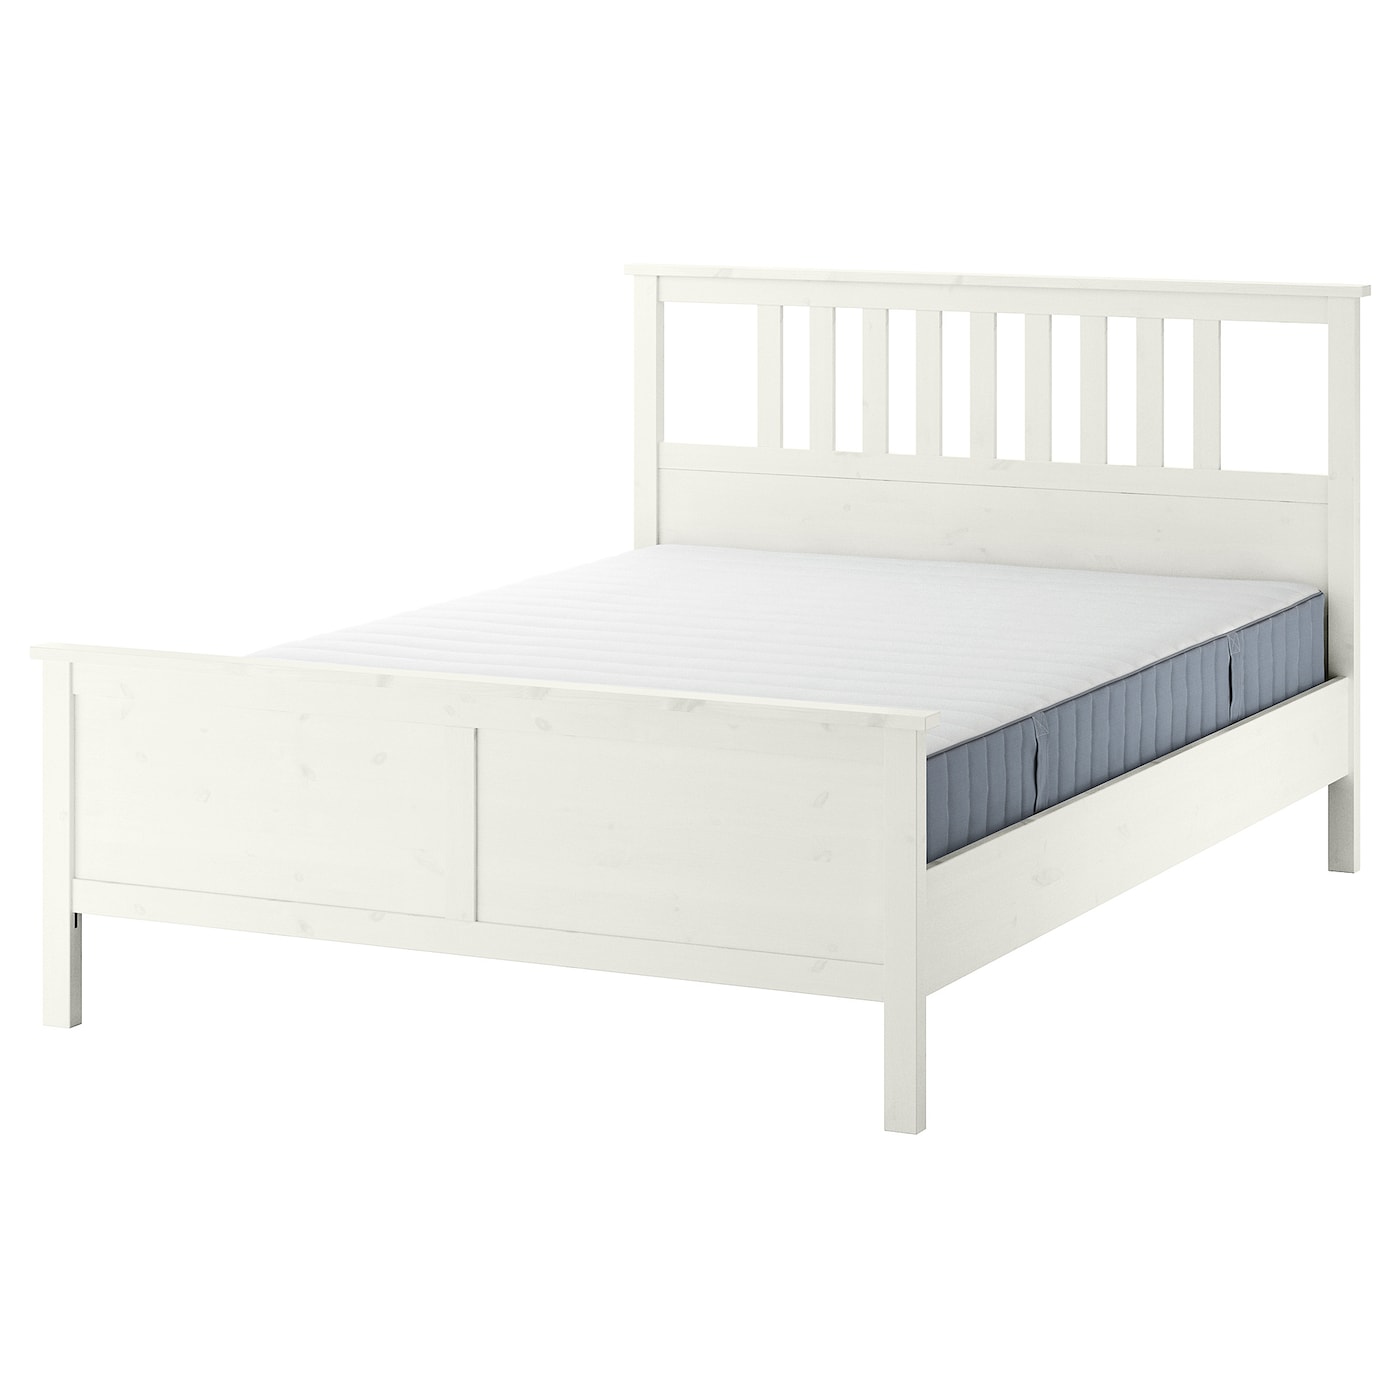 Кровать - IKEA HEMNES, 200х140 см, матрас средней жесткости, белый, ХЕМНЭС ИКЕА